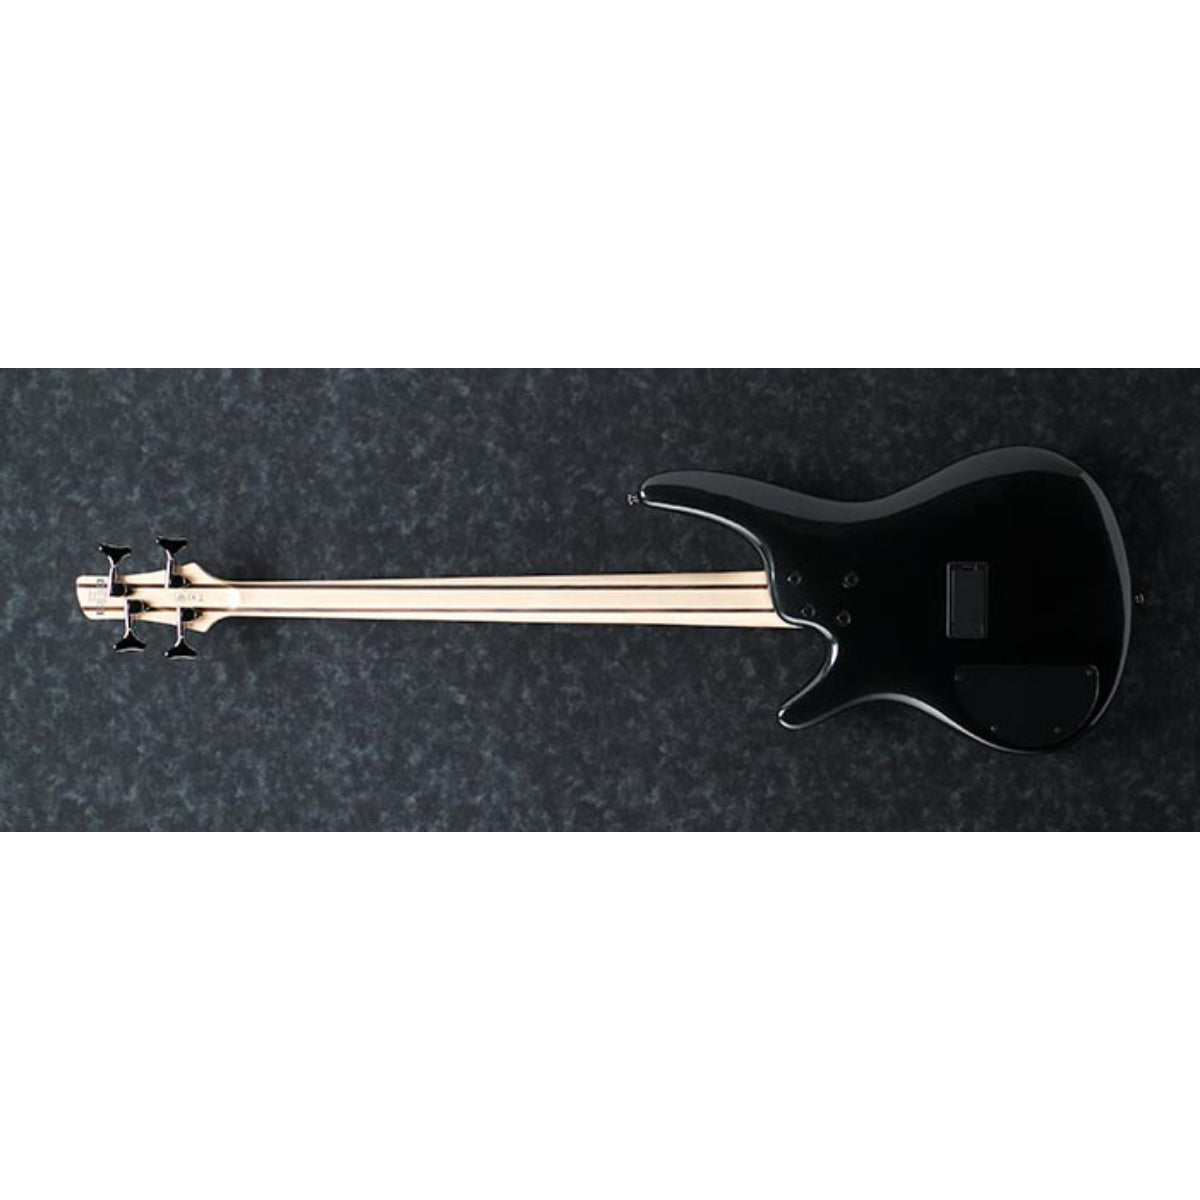 SR300E-IPT Agathis Bass Iron Pewter